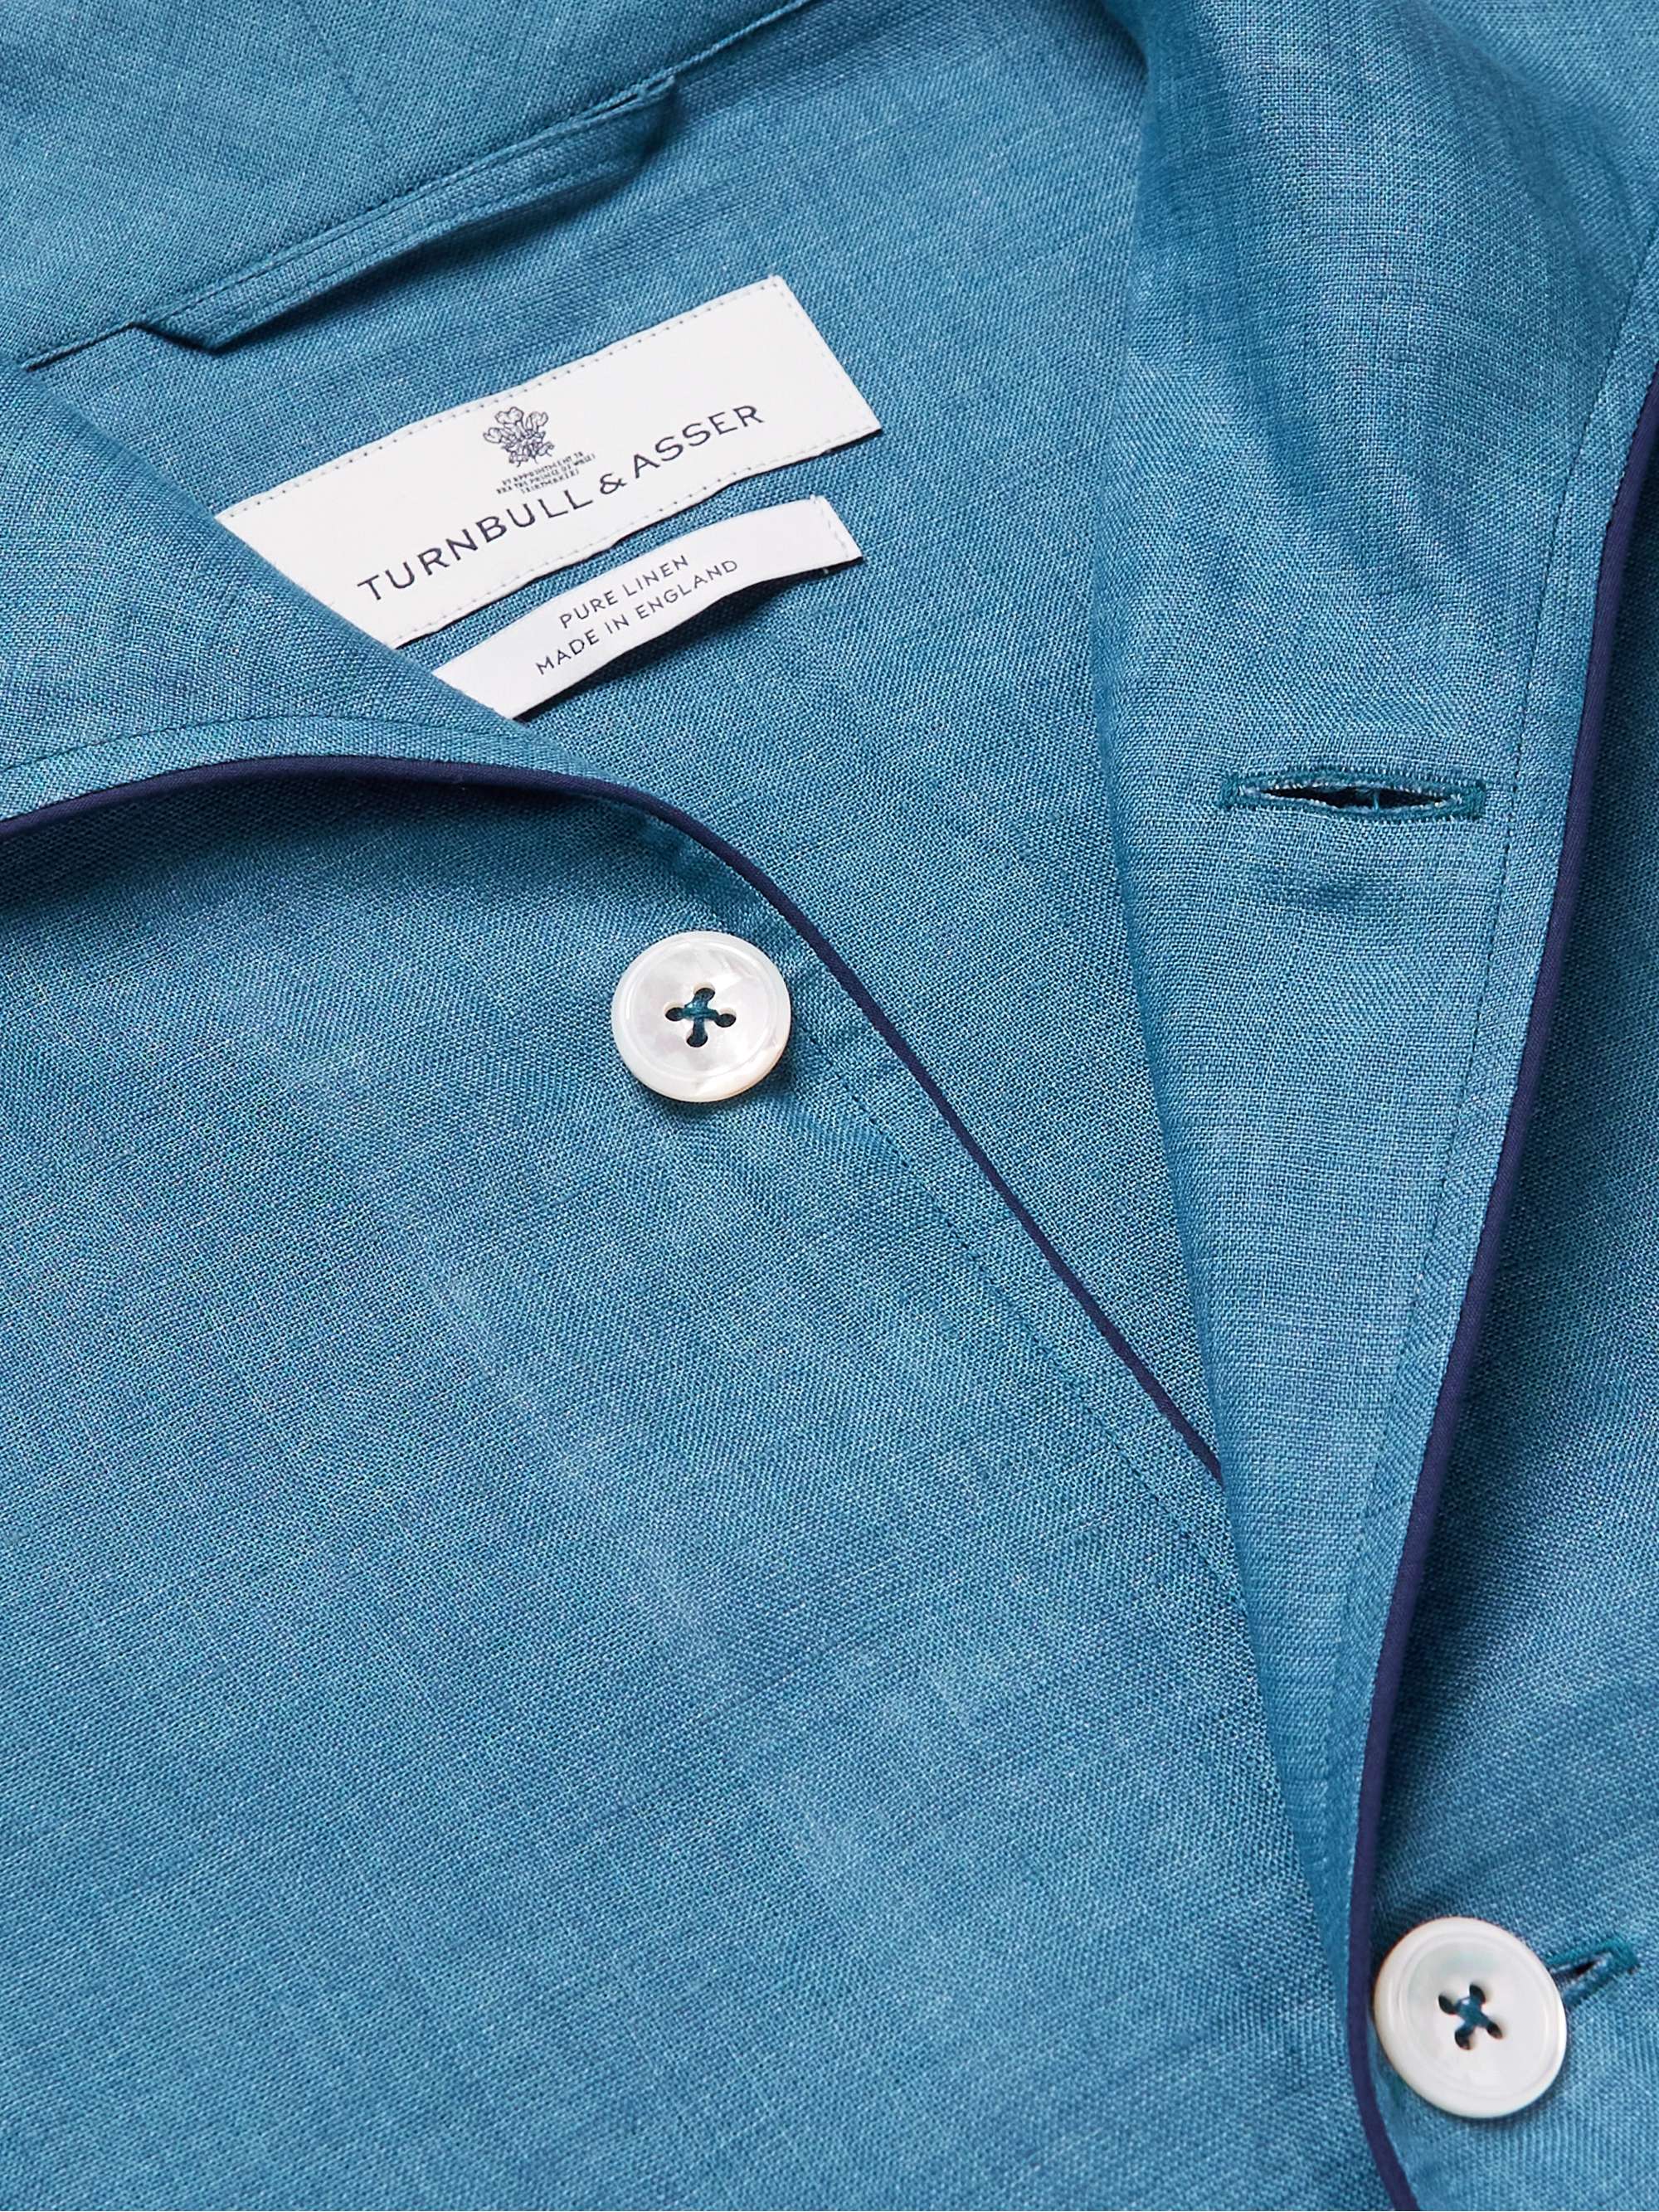 Turquoise Modern Linen Pyjama Set | TURNBULL & ASSER | MR PORTER